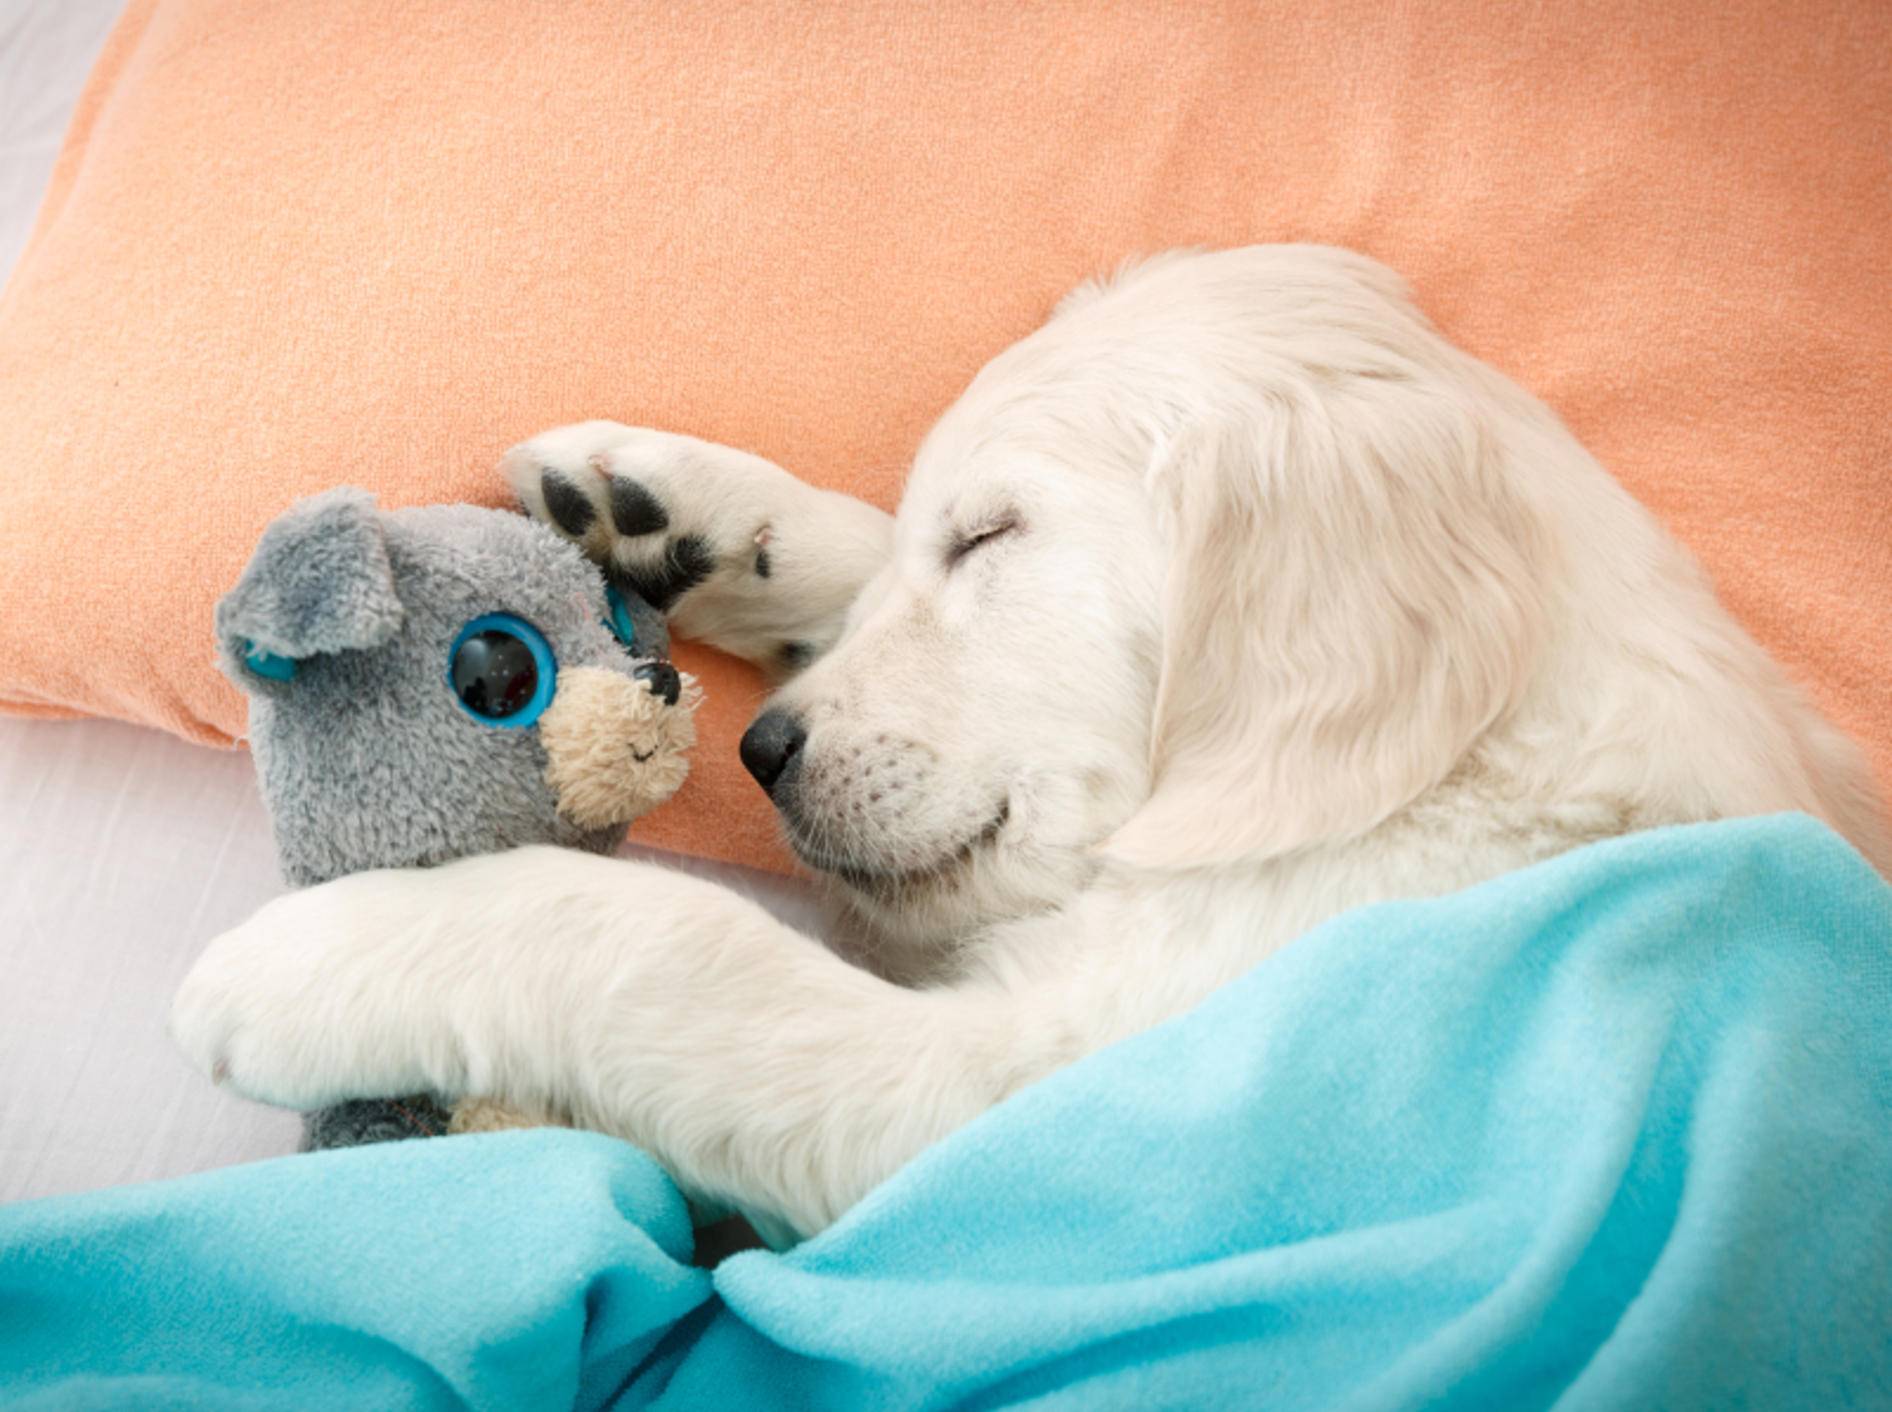 "Ohne mein Kuscheltier kann ich nicht schlafen!" – Bild: Shutterstock / NotarYES